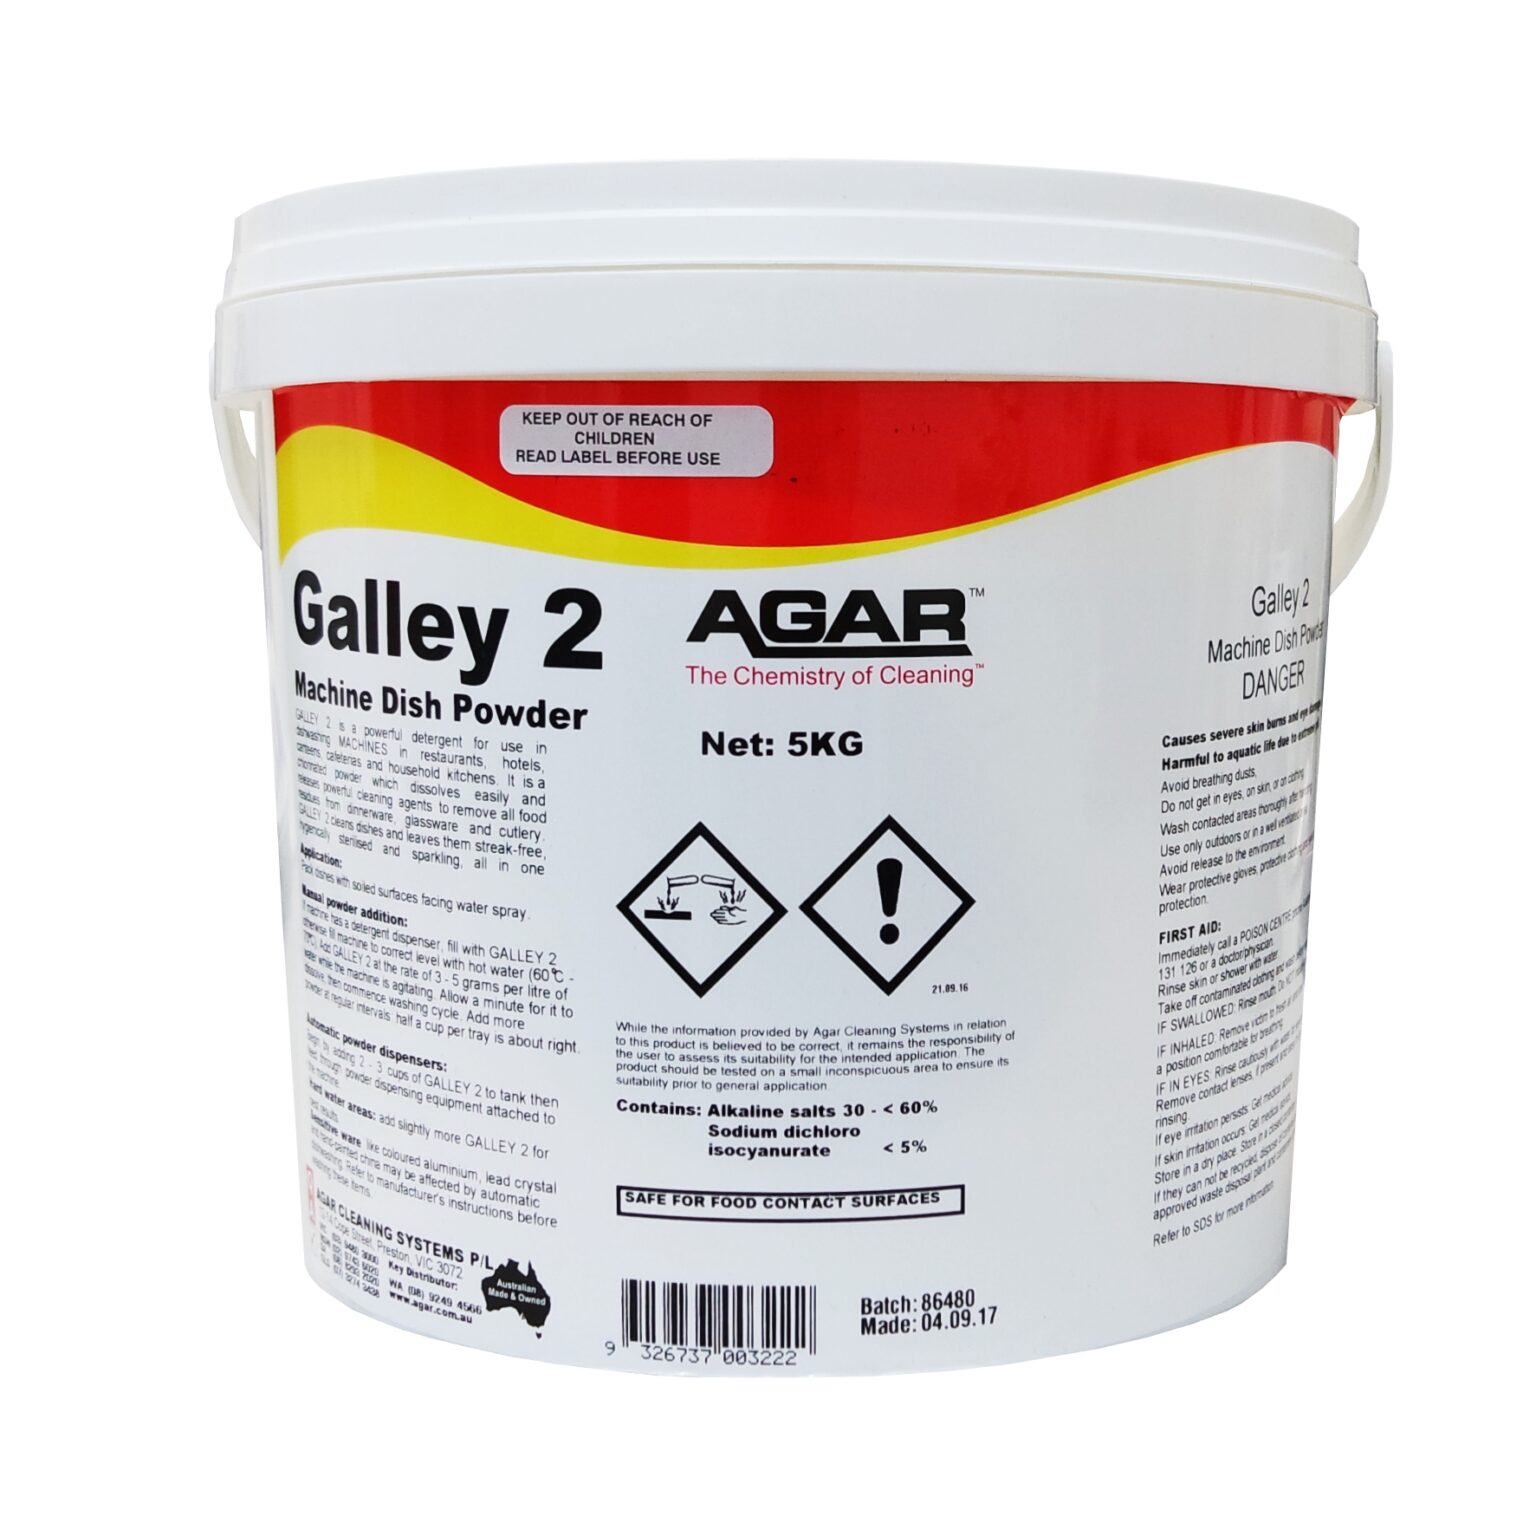 Agar Galley 2 Machine Dish Washer, 5Kg